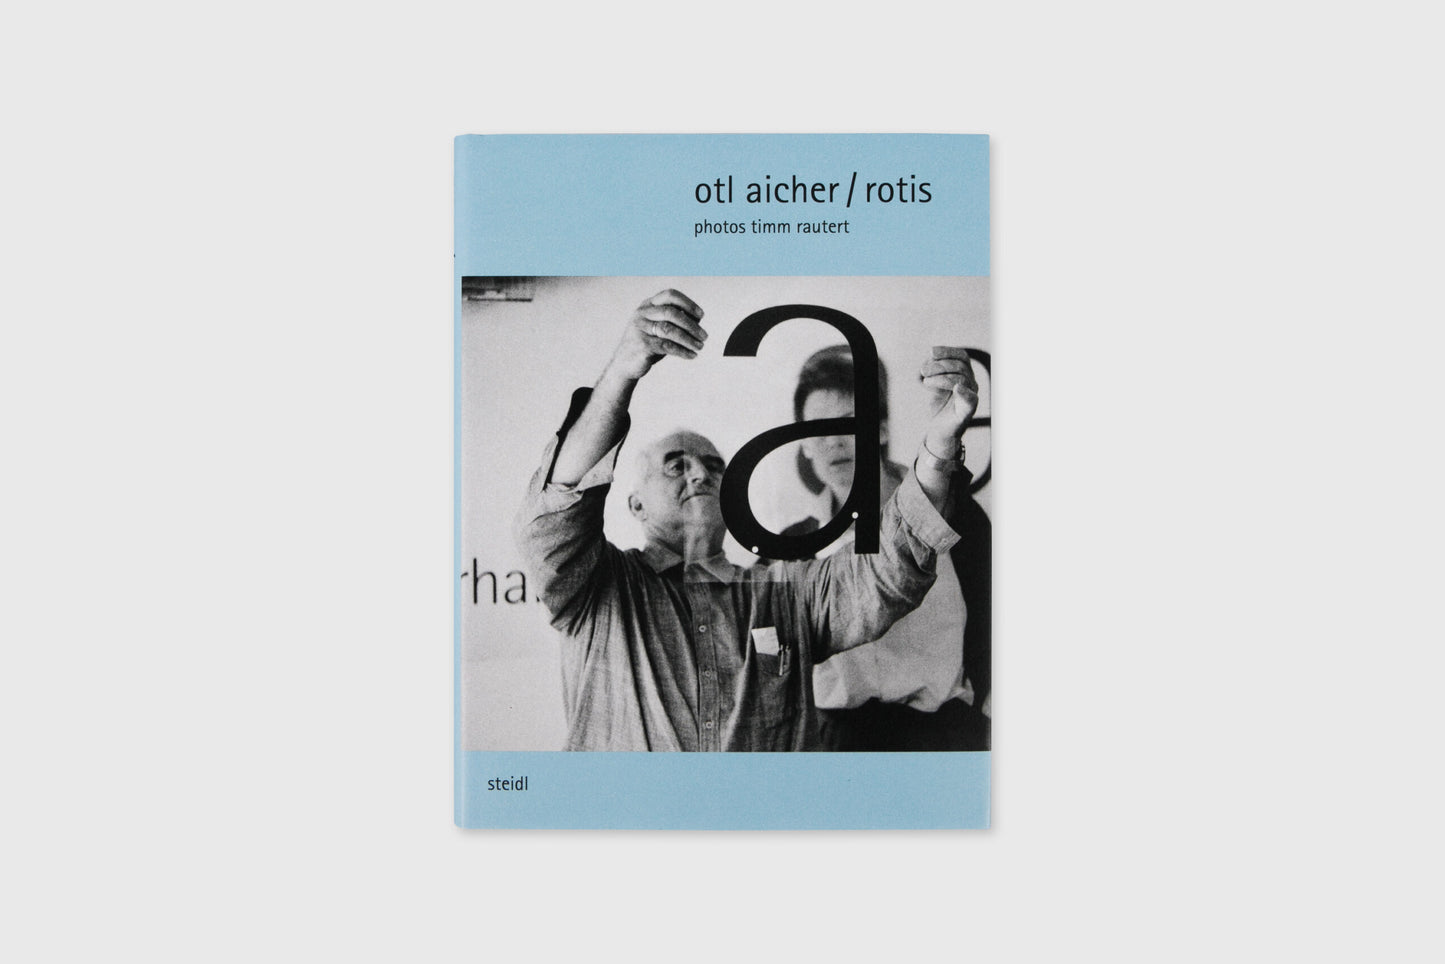 Otl Aicher / Rotis